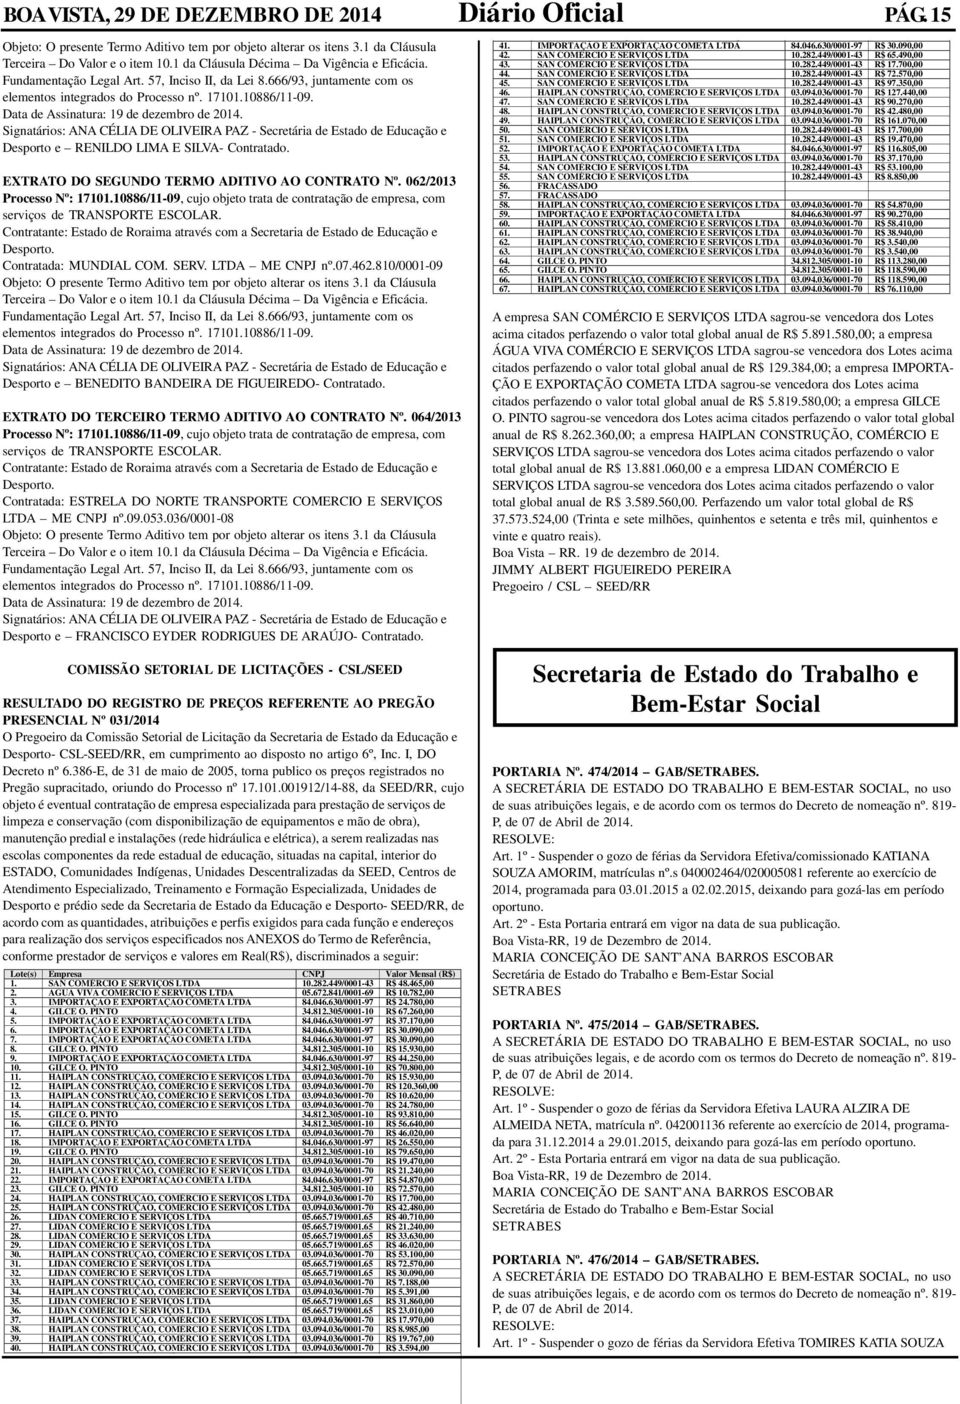 064/2013 Contratada: ESTRELA DO NORTE TRANSPORTE COMERCIO E SERVIÇOS LTDA ME CNPJ nº.09.053.036/0001-08 Desporto e FRANCISCO EYDER RODRIGUES DE ARAÚJO- Contratado.